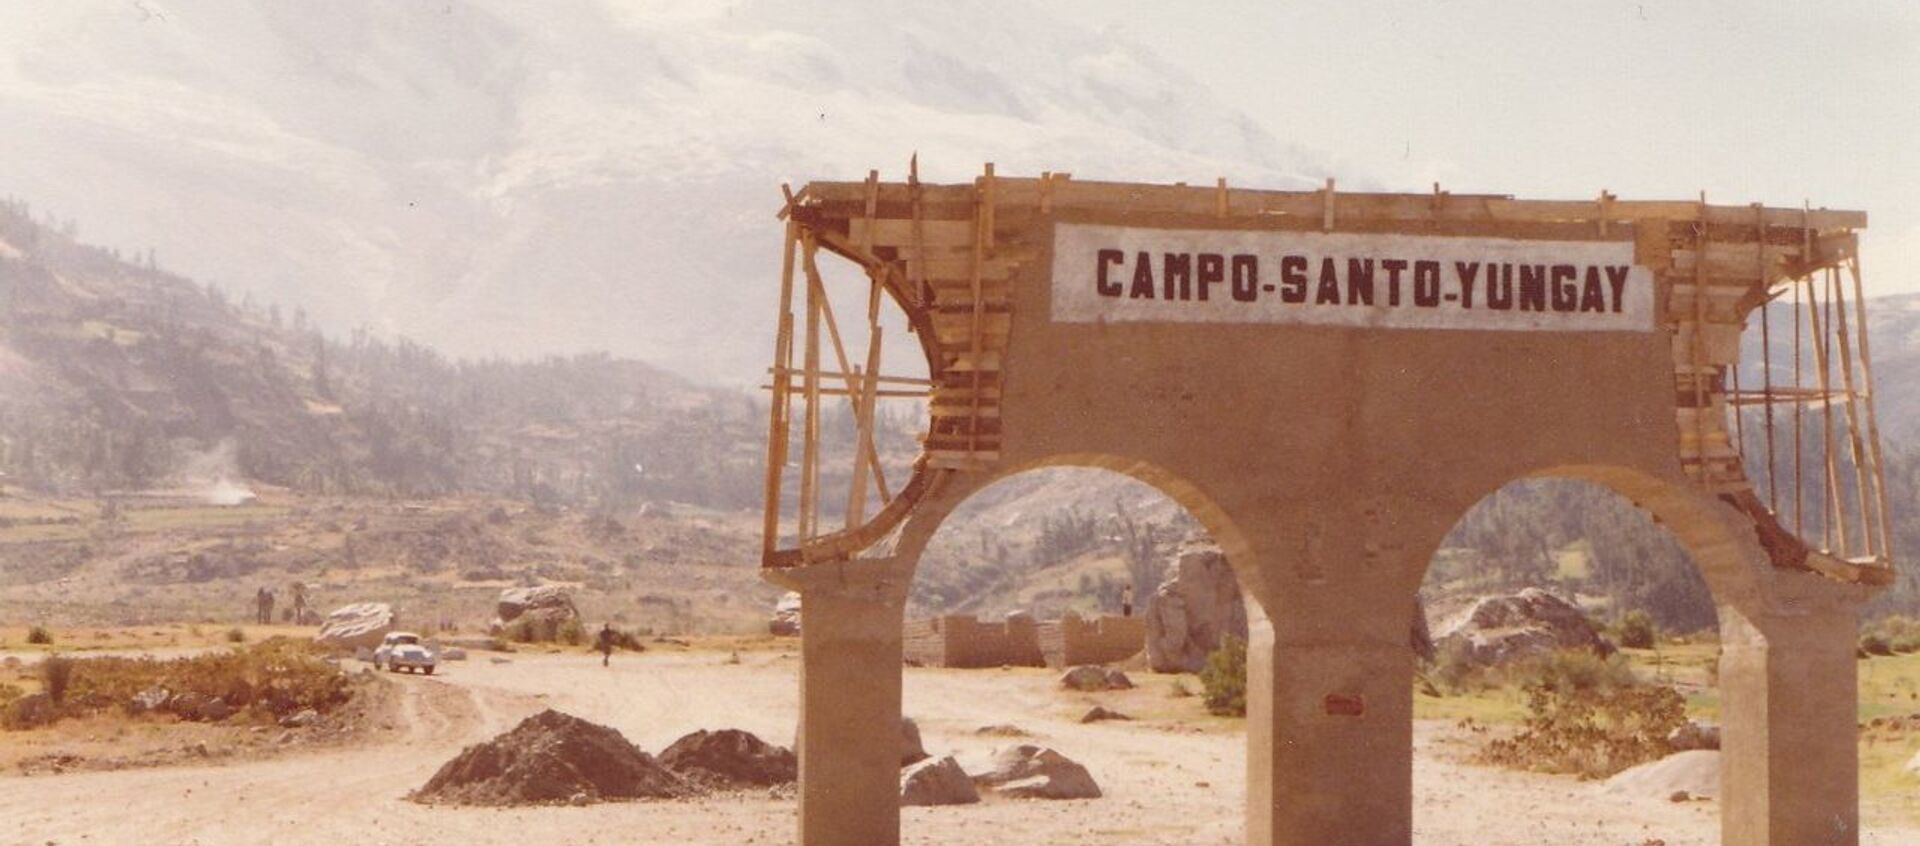 Ruinas del camposanto de la ciudad de Yungay, Perú, aplastada por un aluvión en 1970. - Sputnik Mundo, 1920, 30.05.2020